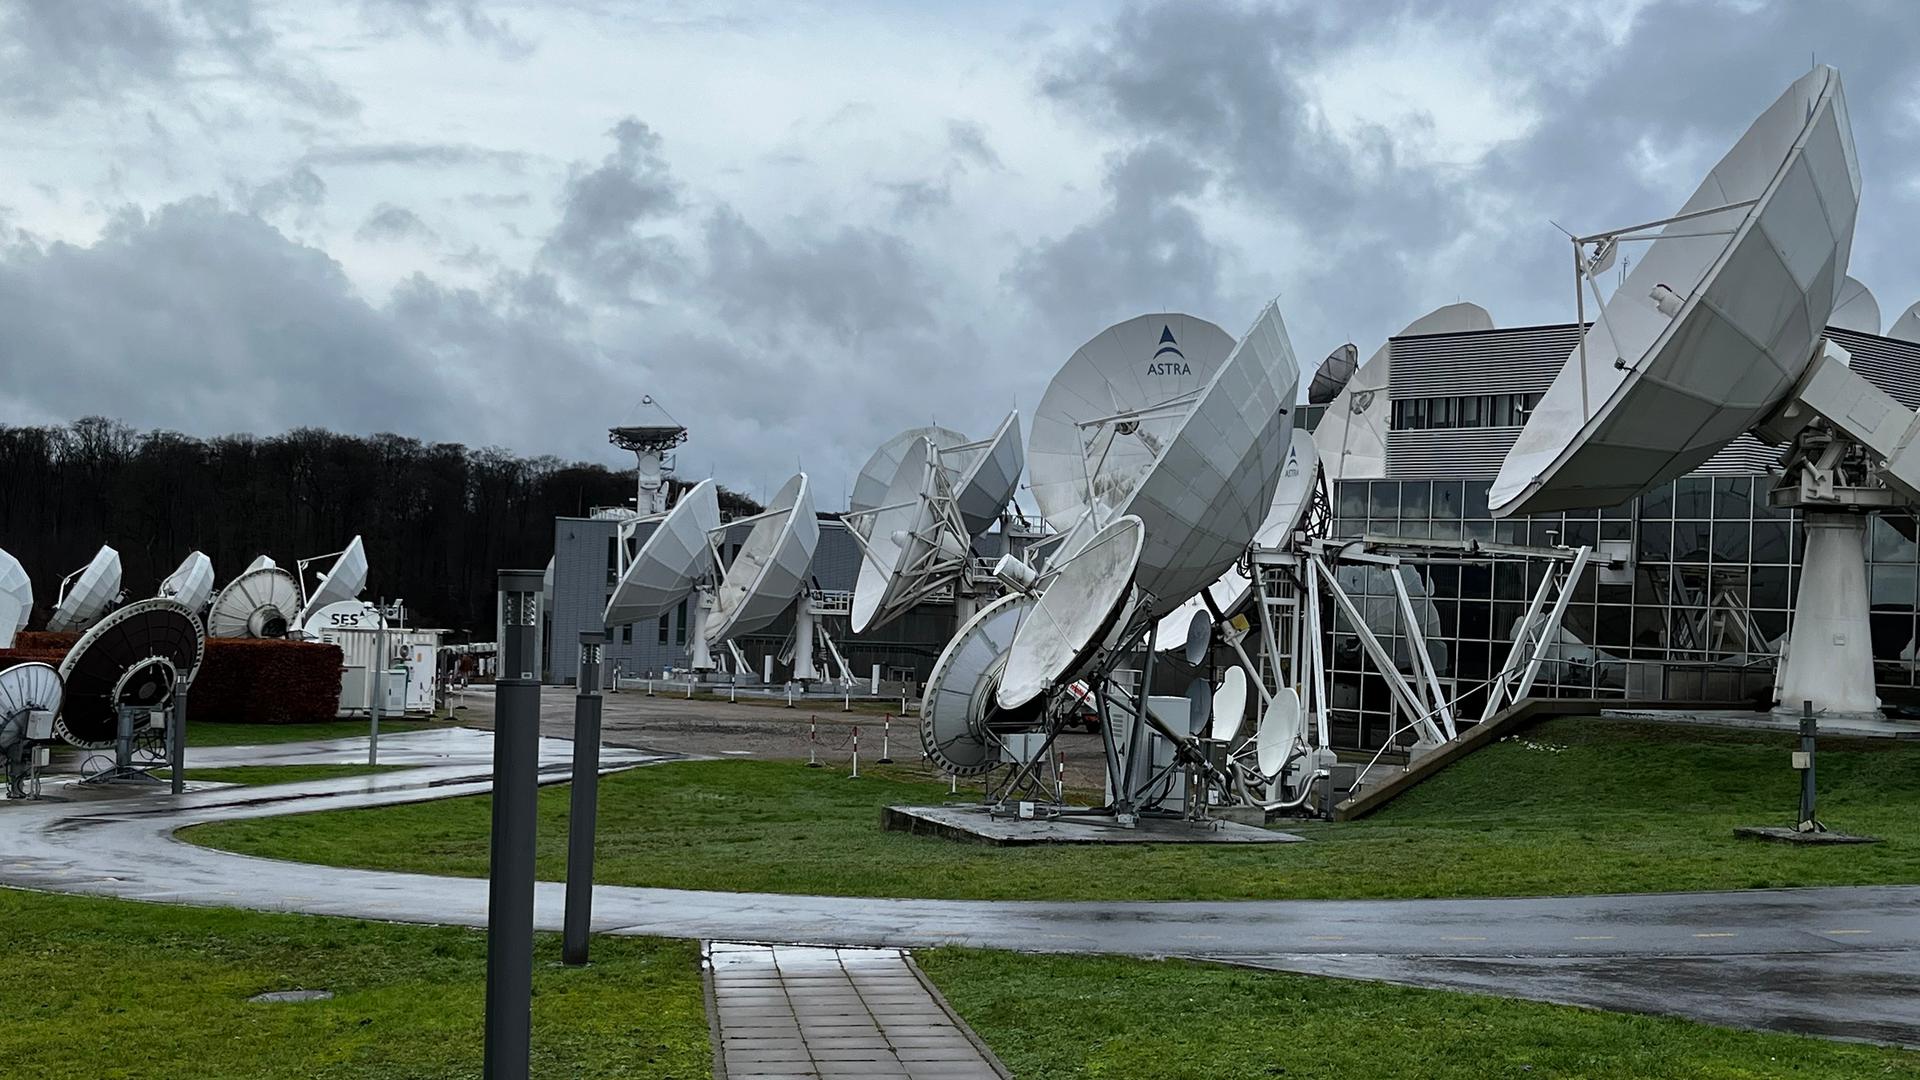 L'entreprise luxembourgeoise n'est autre que le premier fournisseur de services de télécommunications par satellites au monde avec plus de 2 milliards d'euros de chiffre d'affaires.